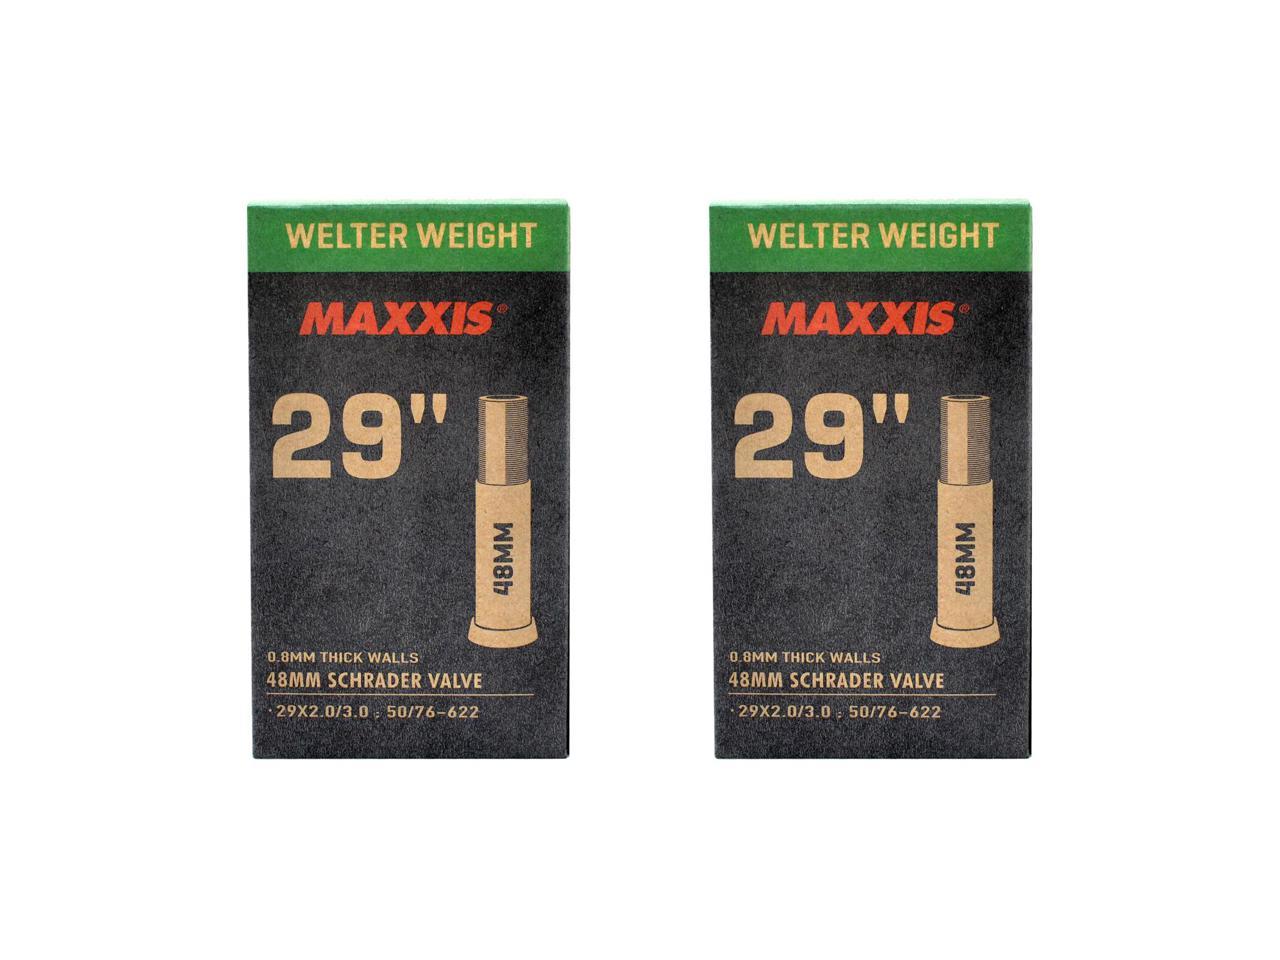 Maxxis Welter Weight 700x23-32C 60mm Presta FV Bike Inner Tube 1Pack - 6 Pack 